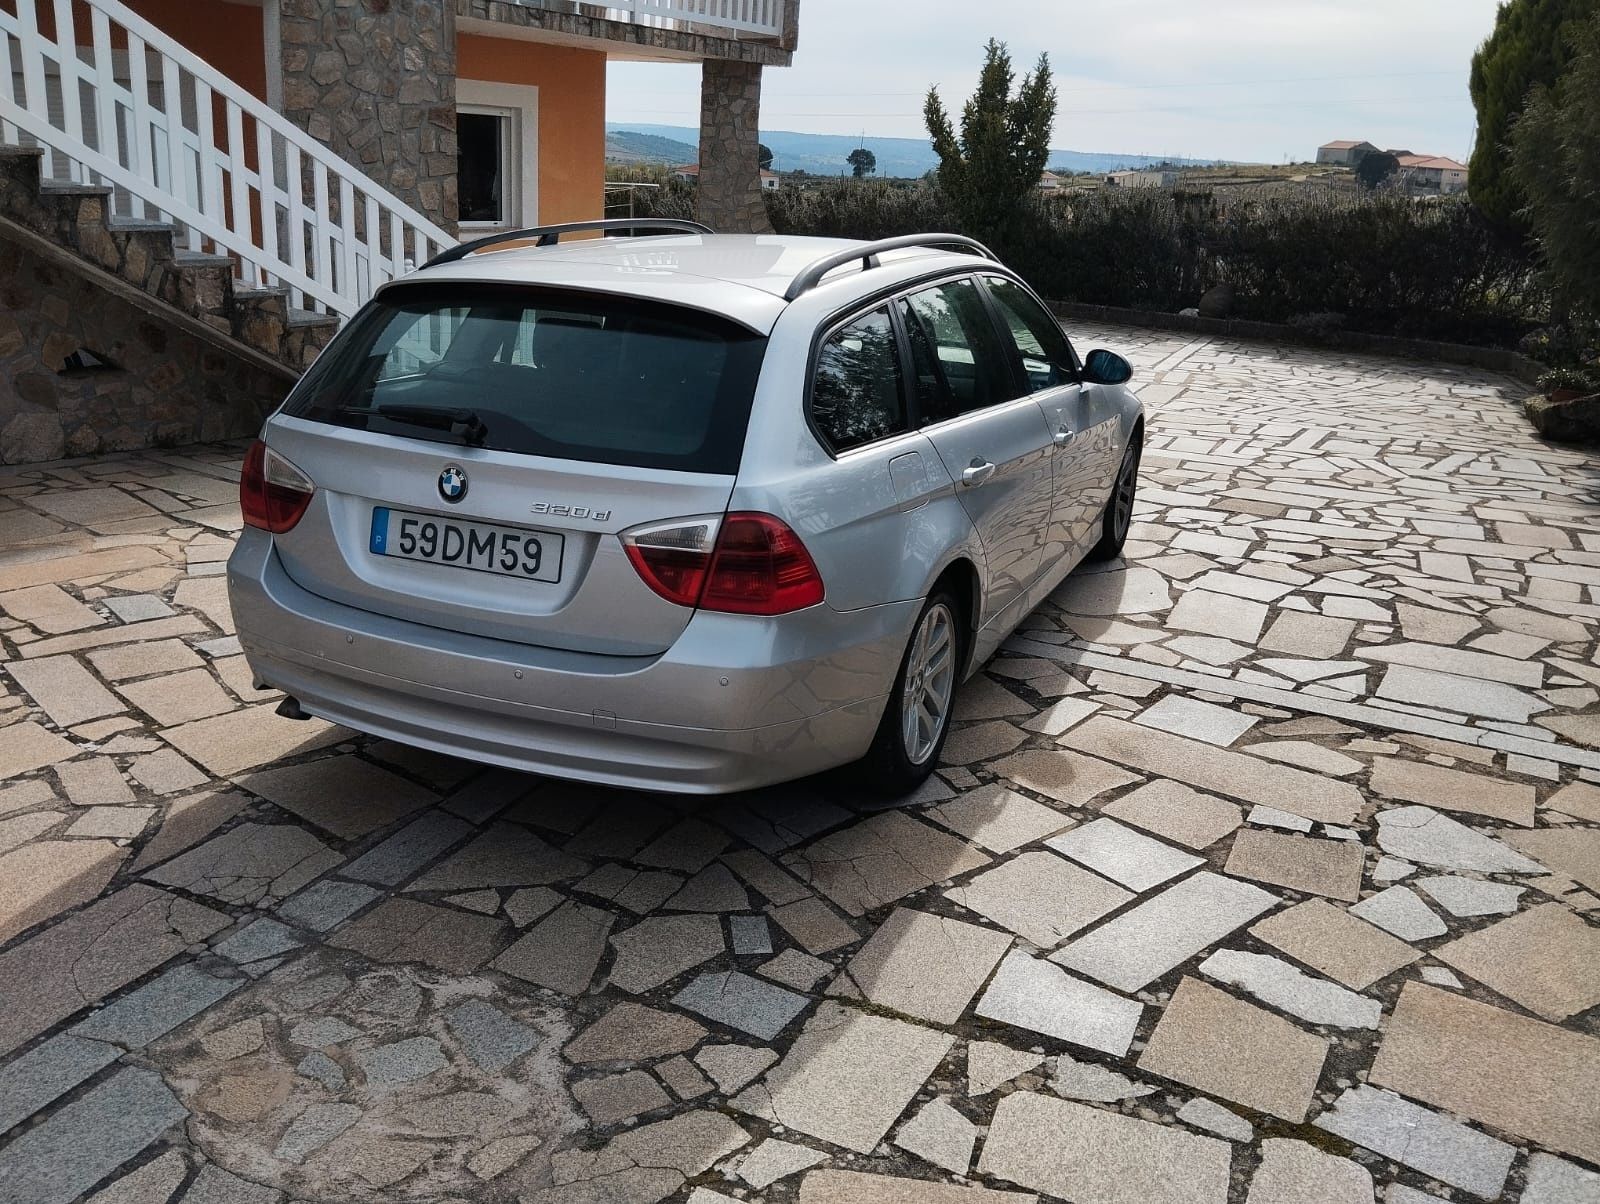 BMW 320d, 163cv, 180mil km, nacional, selo antigo.